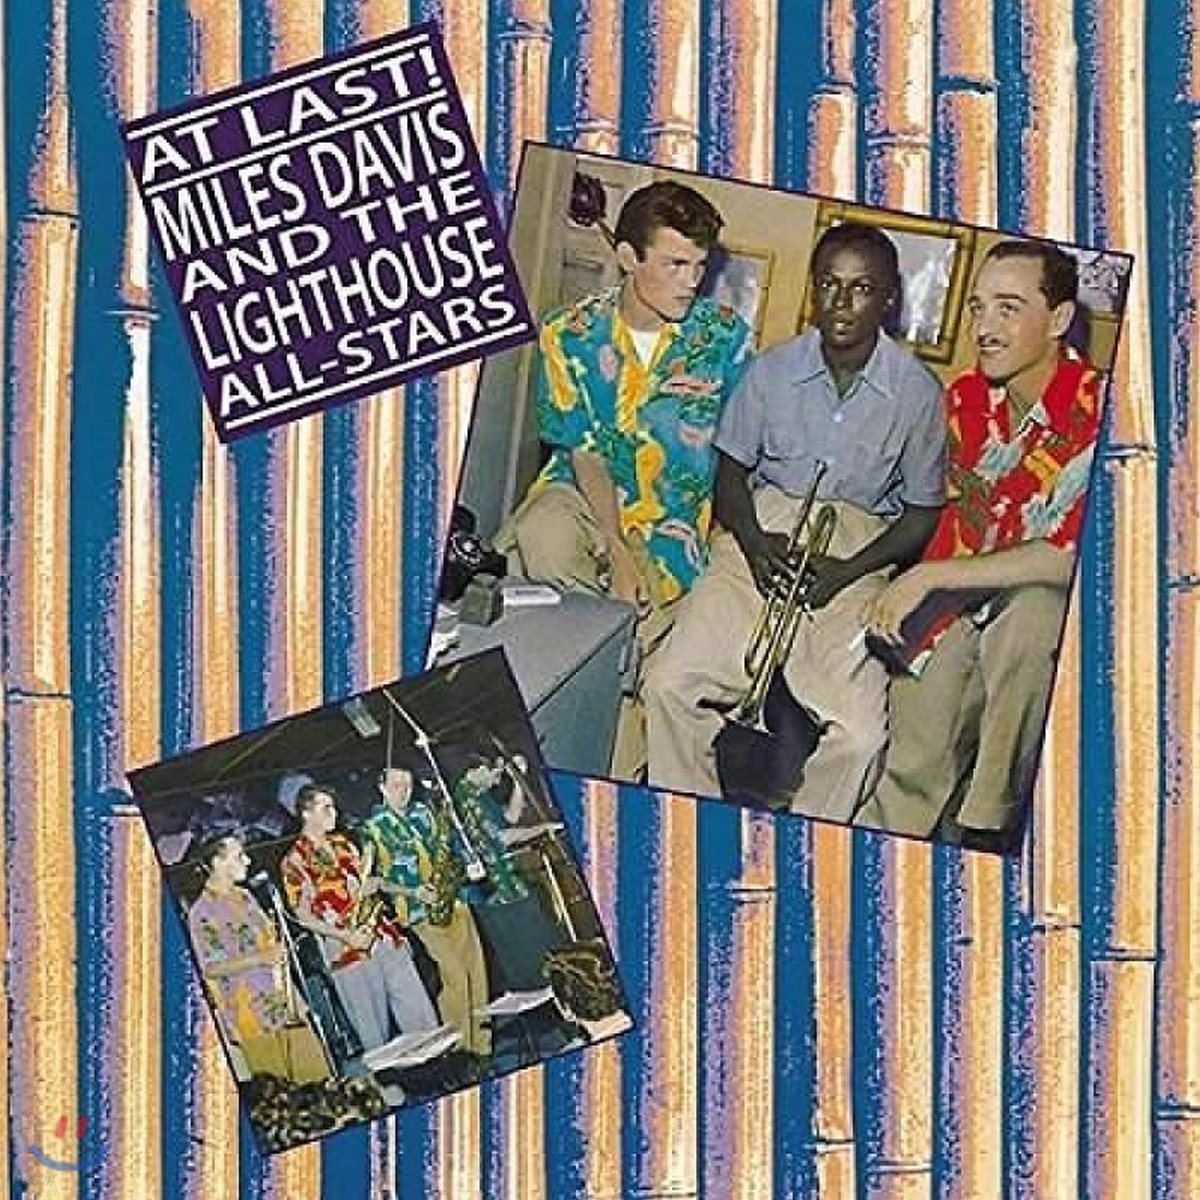 Miles Davis and The Lighthouse All-Stars - At Last! 마일스 데이비스 앤 더 라이트하우스 올스타즈 [LP]